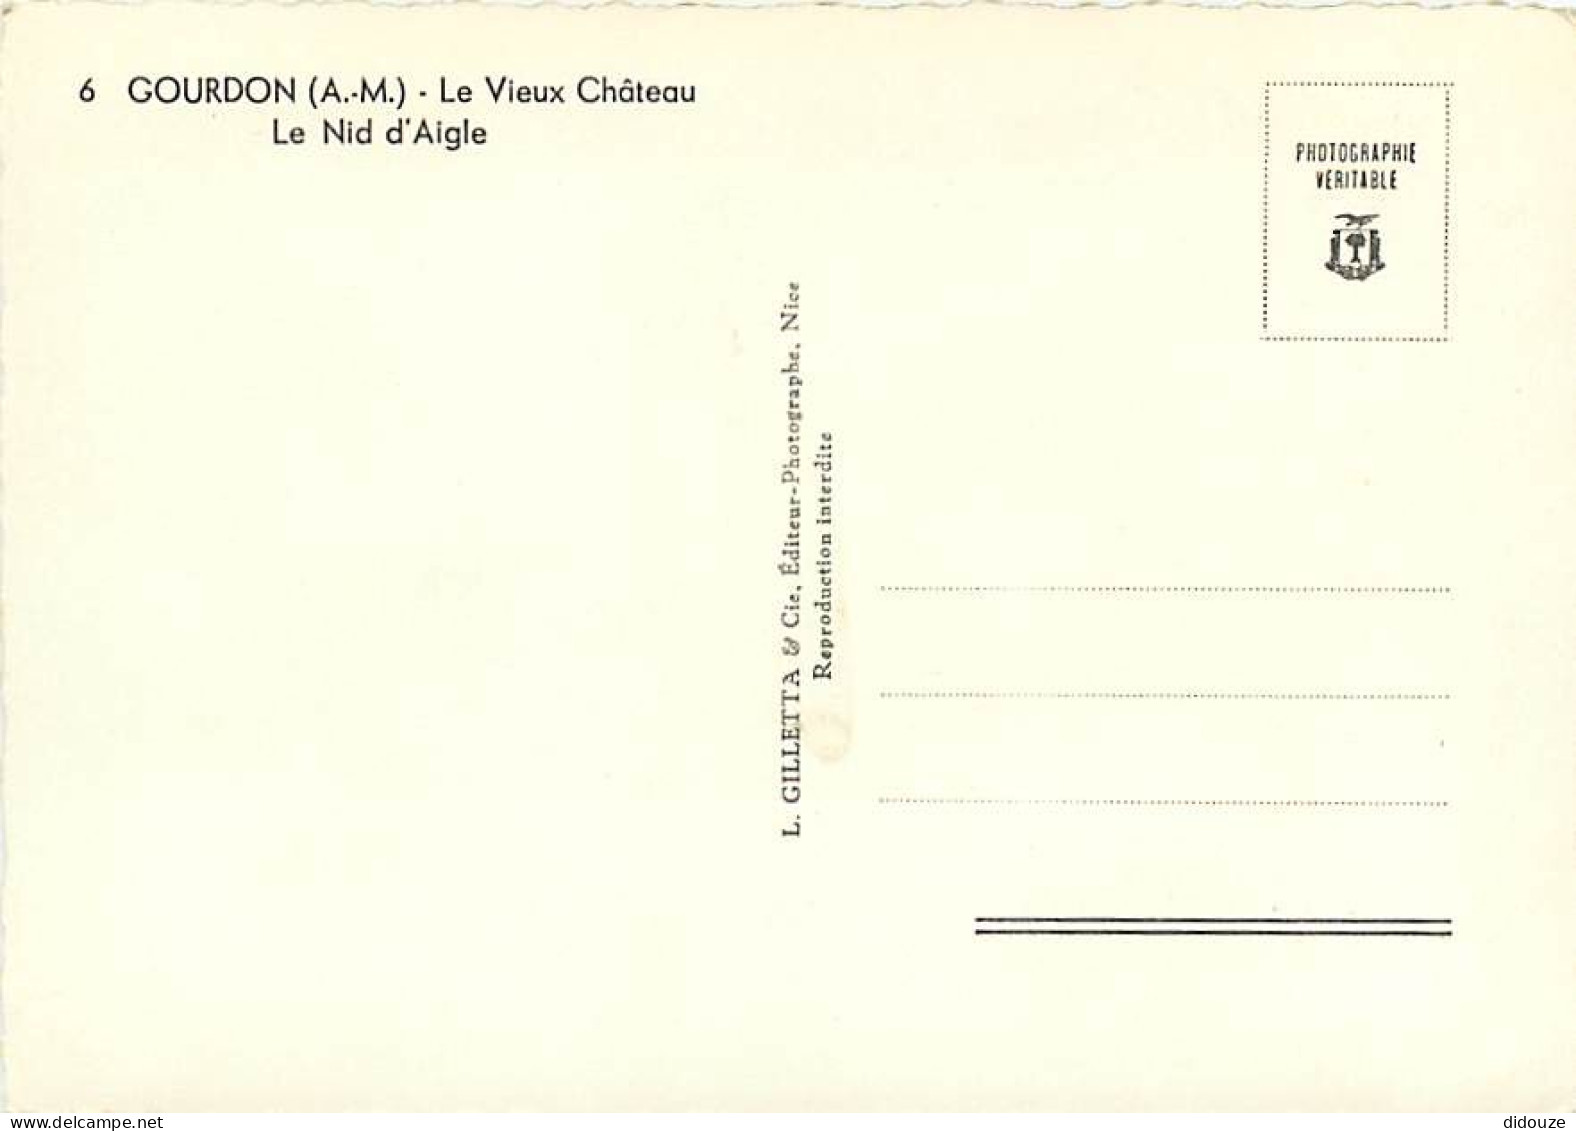 06 - Gourdon - Le Vieux Château - Le Nid D'Aigle - Mention Photographie Véritable - Carte Dentelée - CPSM Grand Format - - Gourdon